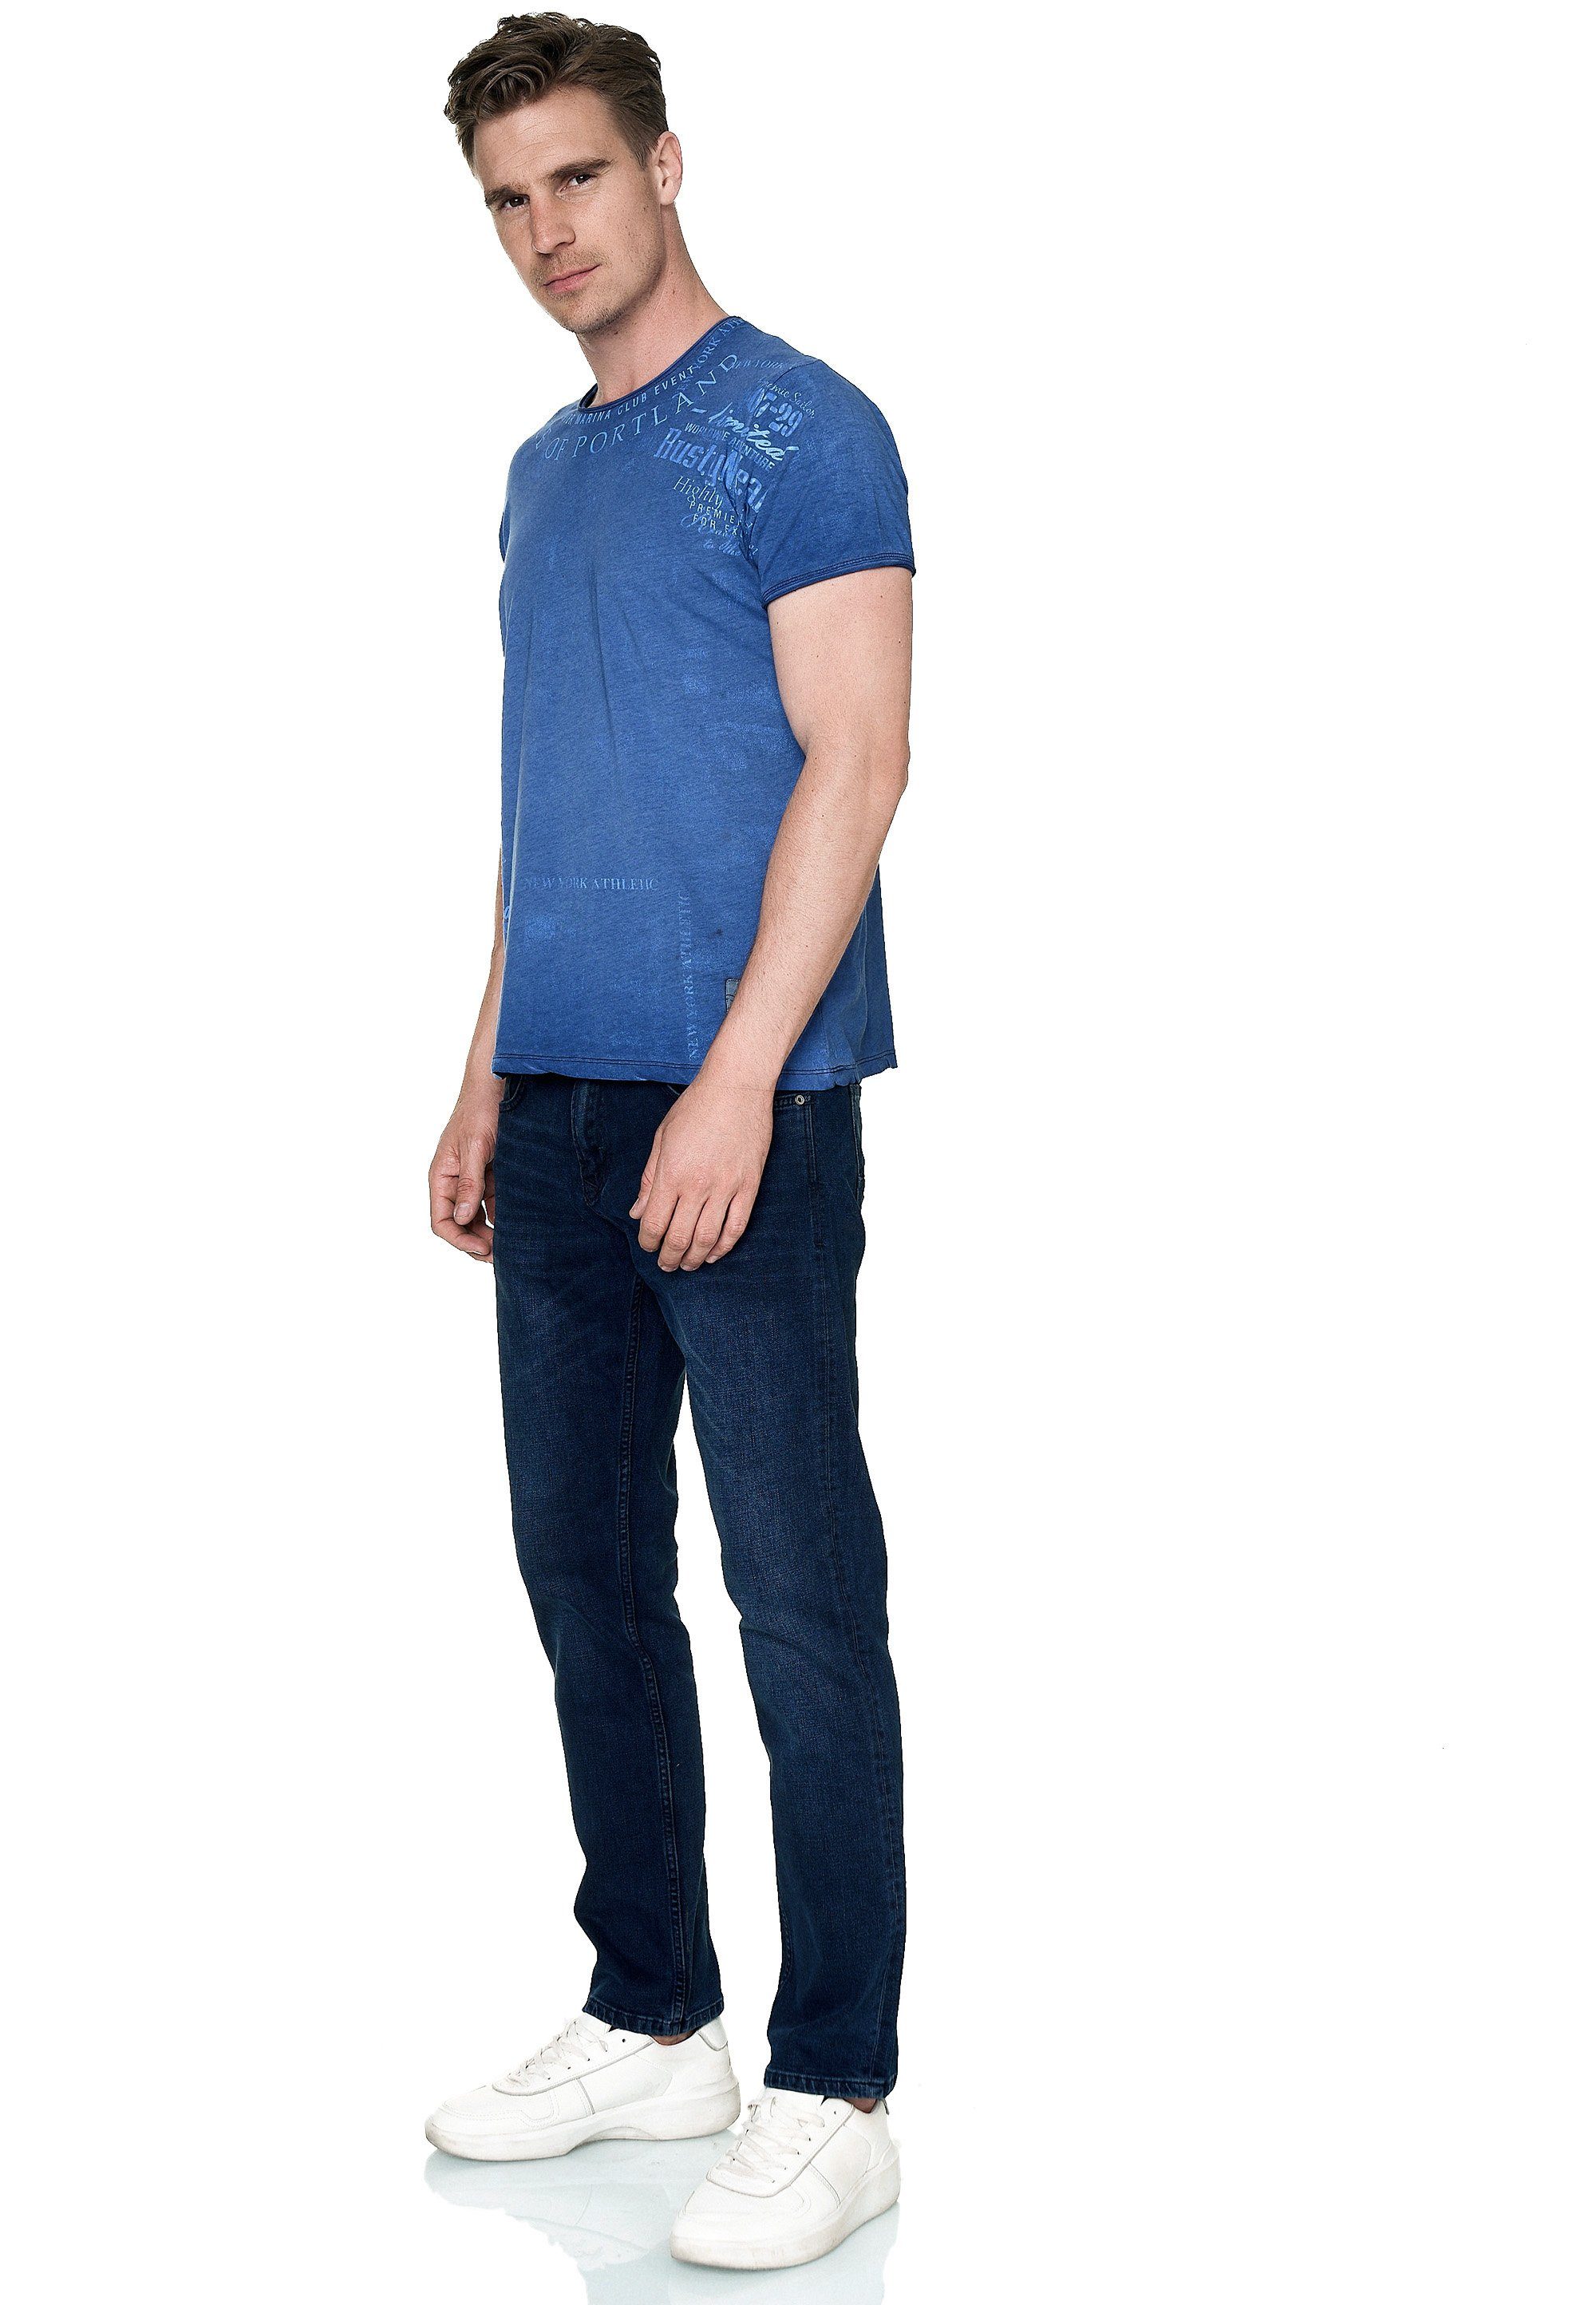 modernem mit T-Shirt blau Print Neal Rusty